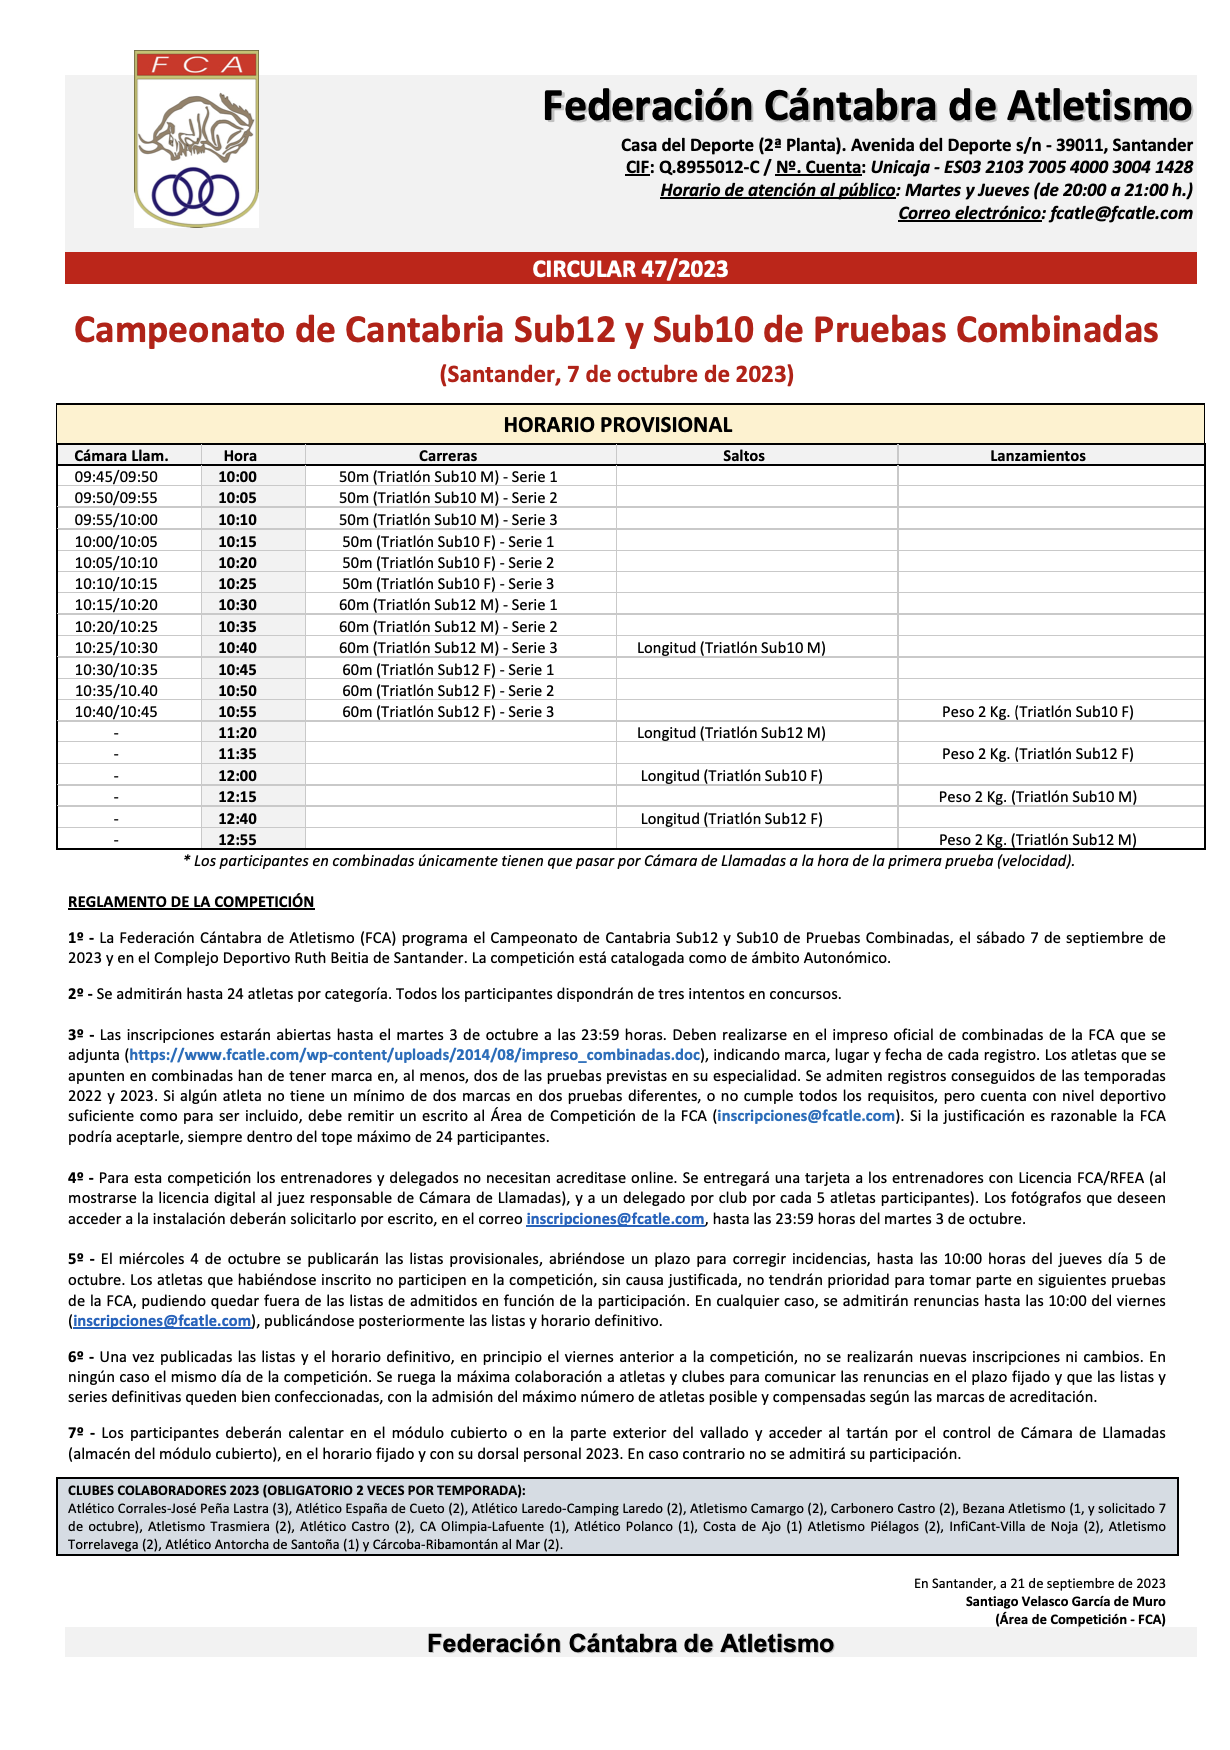 Campeonato de Cantabria Sub12 y Sub10 de Pruebas Combinadas @ Santander, Cantabria